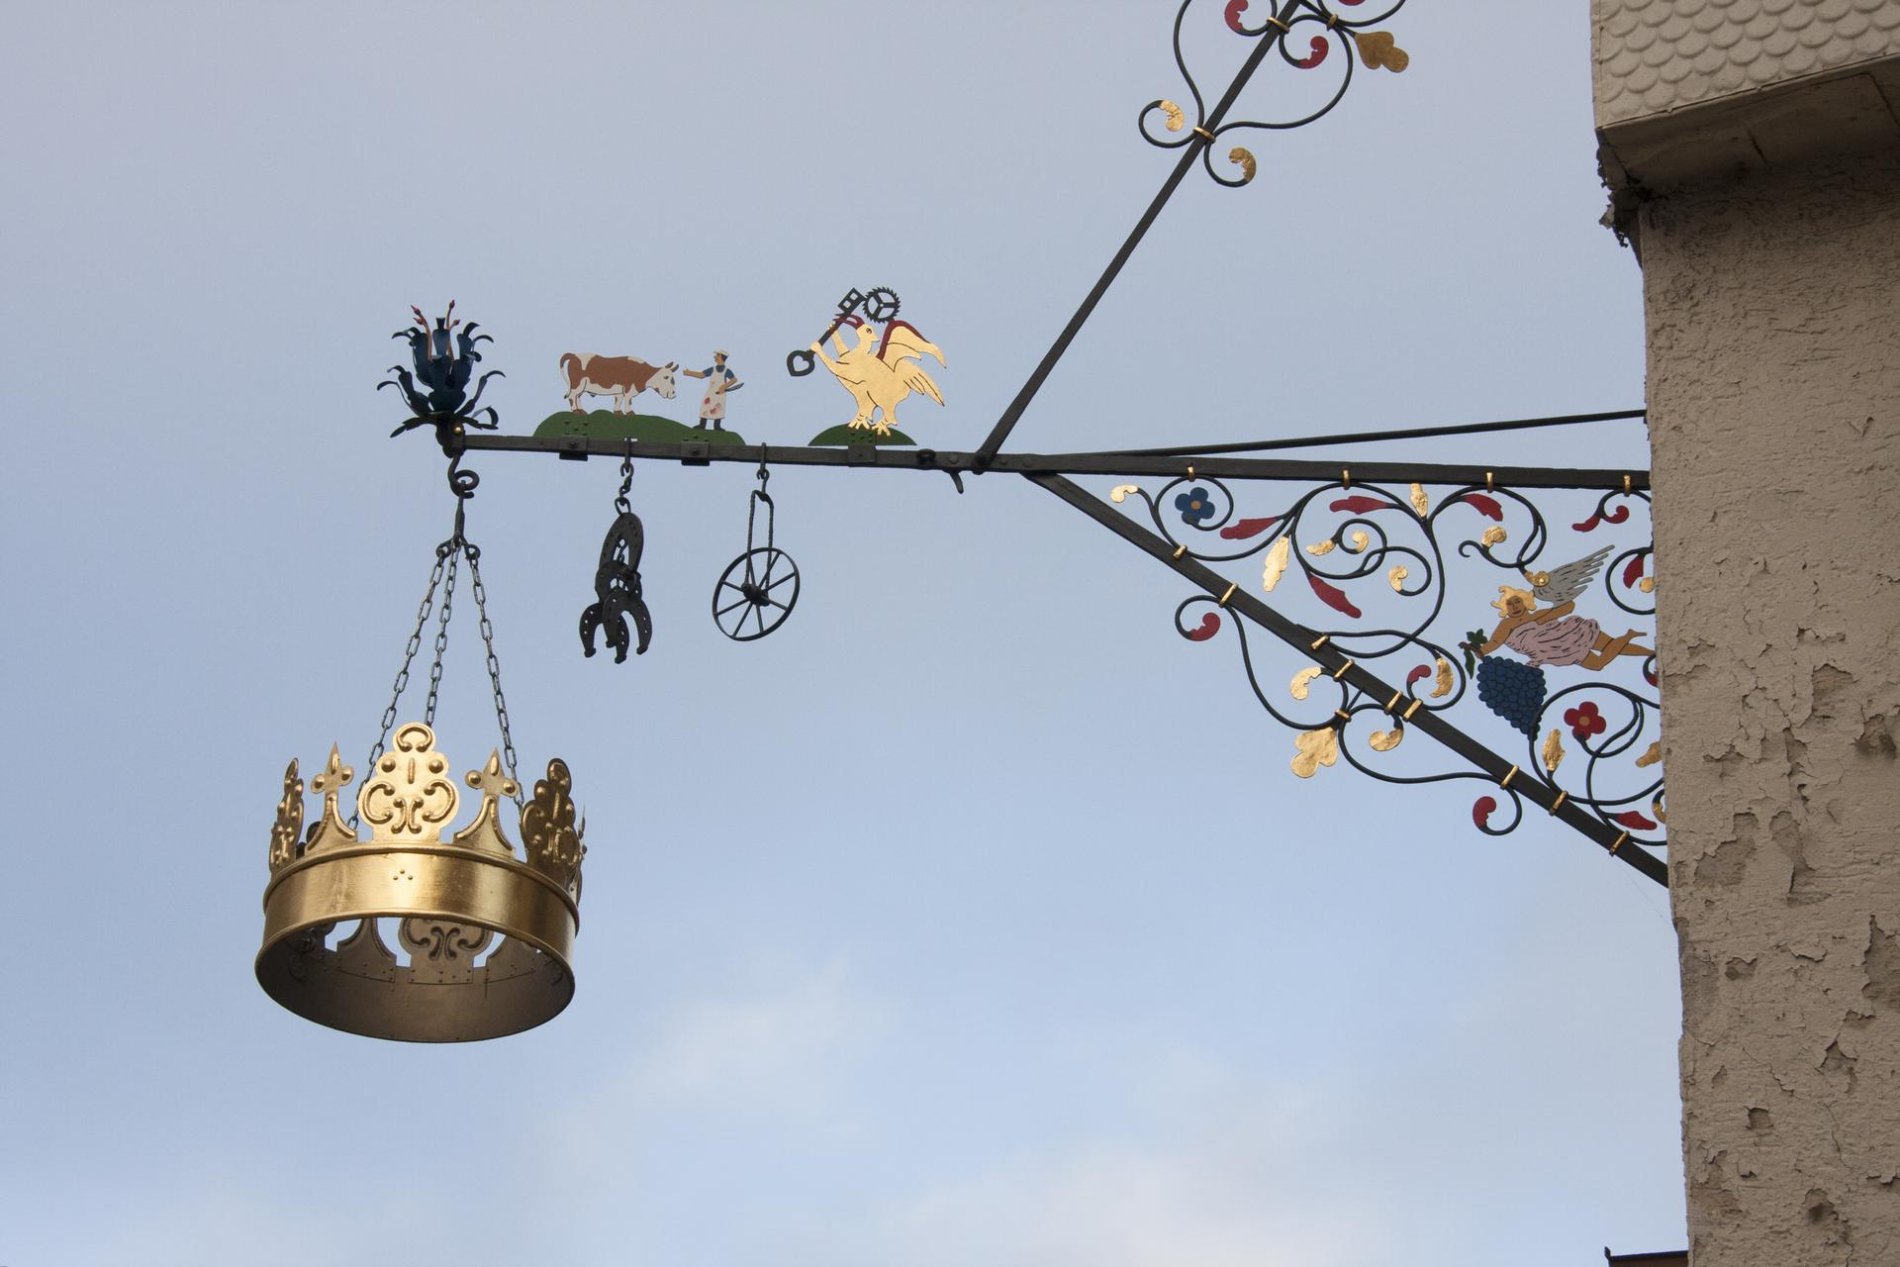 Das Gasthaus Krone in Münsingen im Biosphärengebiet Schwäbische Alb. An einer Hauswand hängt ein Nasenschild mit einer goldenen Krone. Es ist kunstvoll verziert.